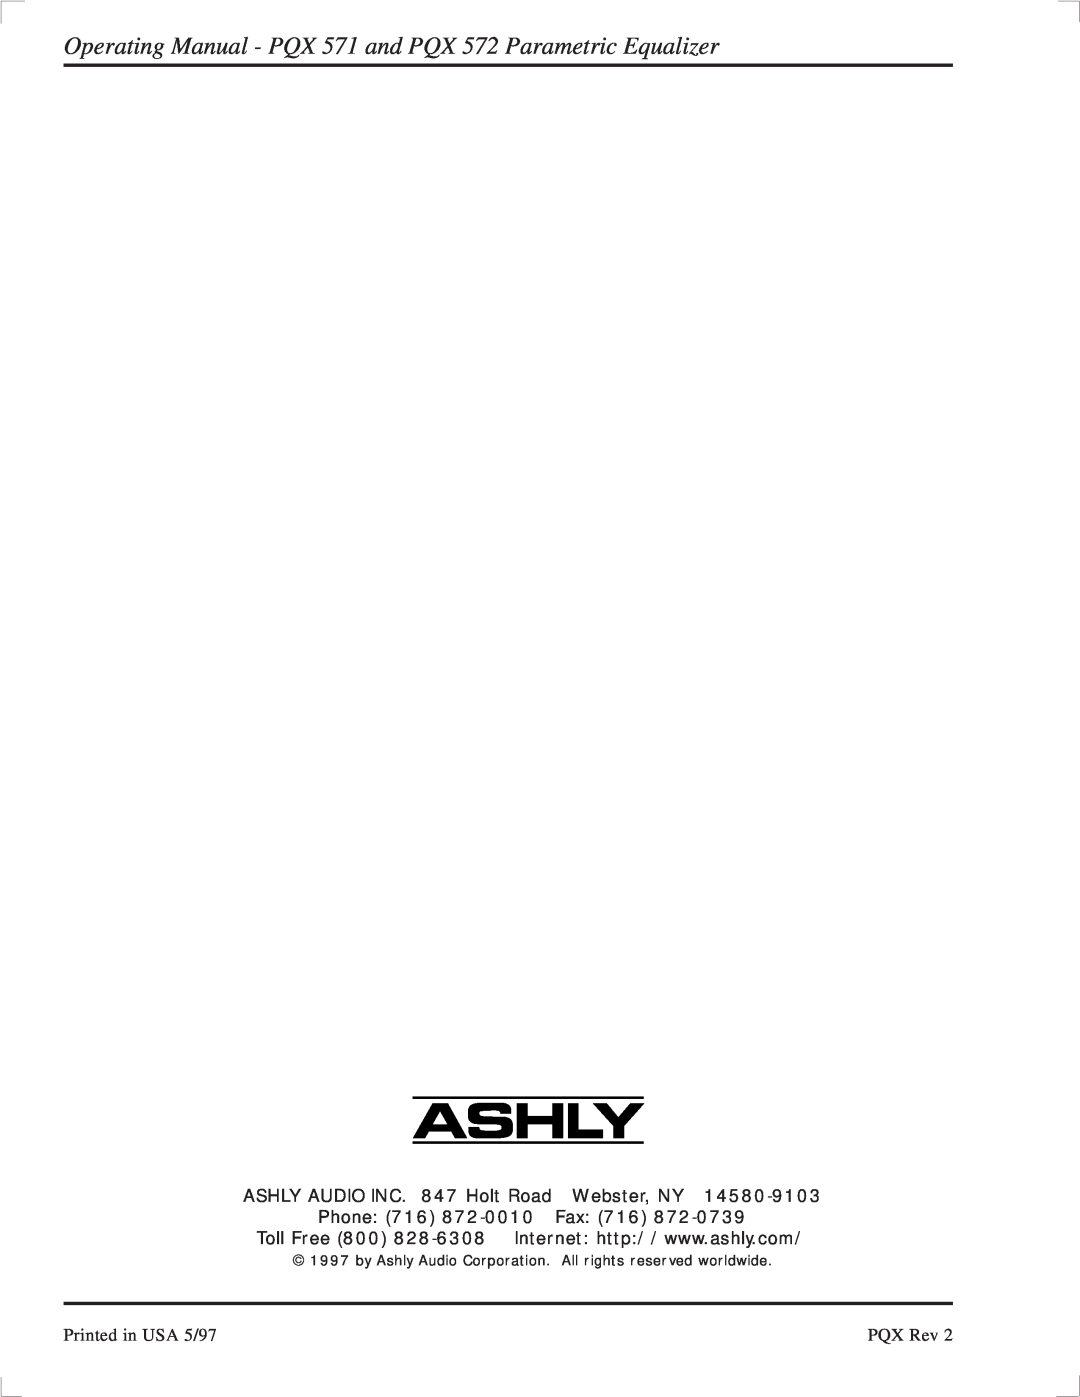 Ashly PQX-572, PQX-571 manual ASHLY AUDIO INC. 847 Holt Road Webster, NY, Phone 716 872-0010Fax, PQX Rev 